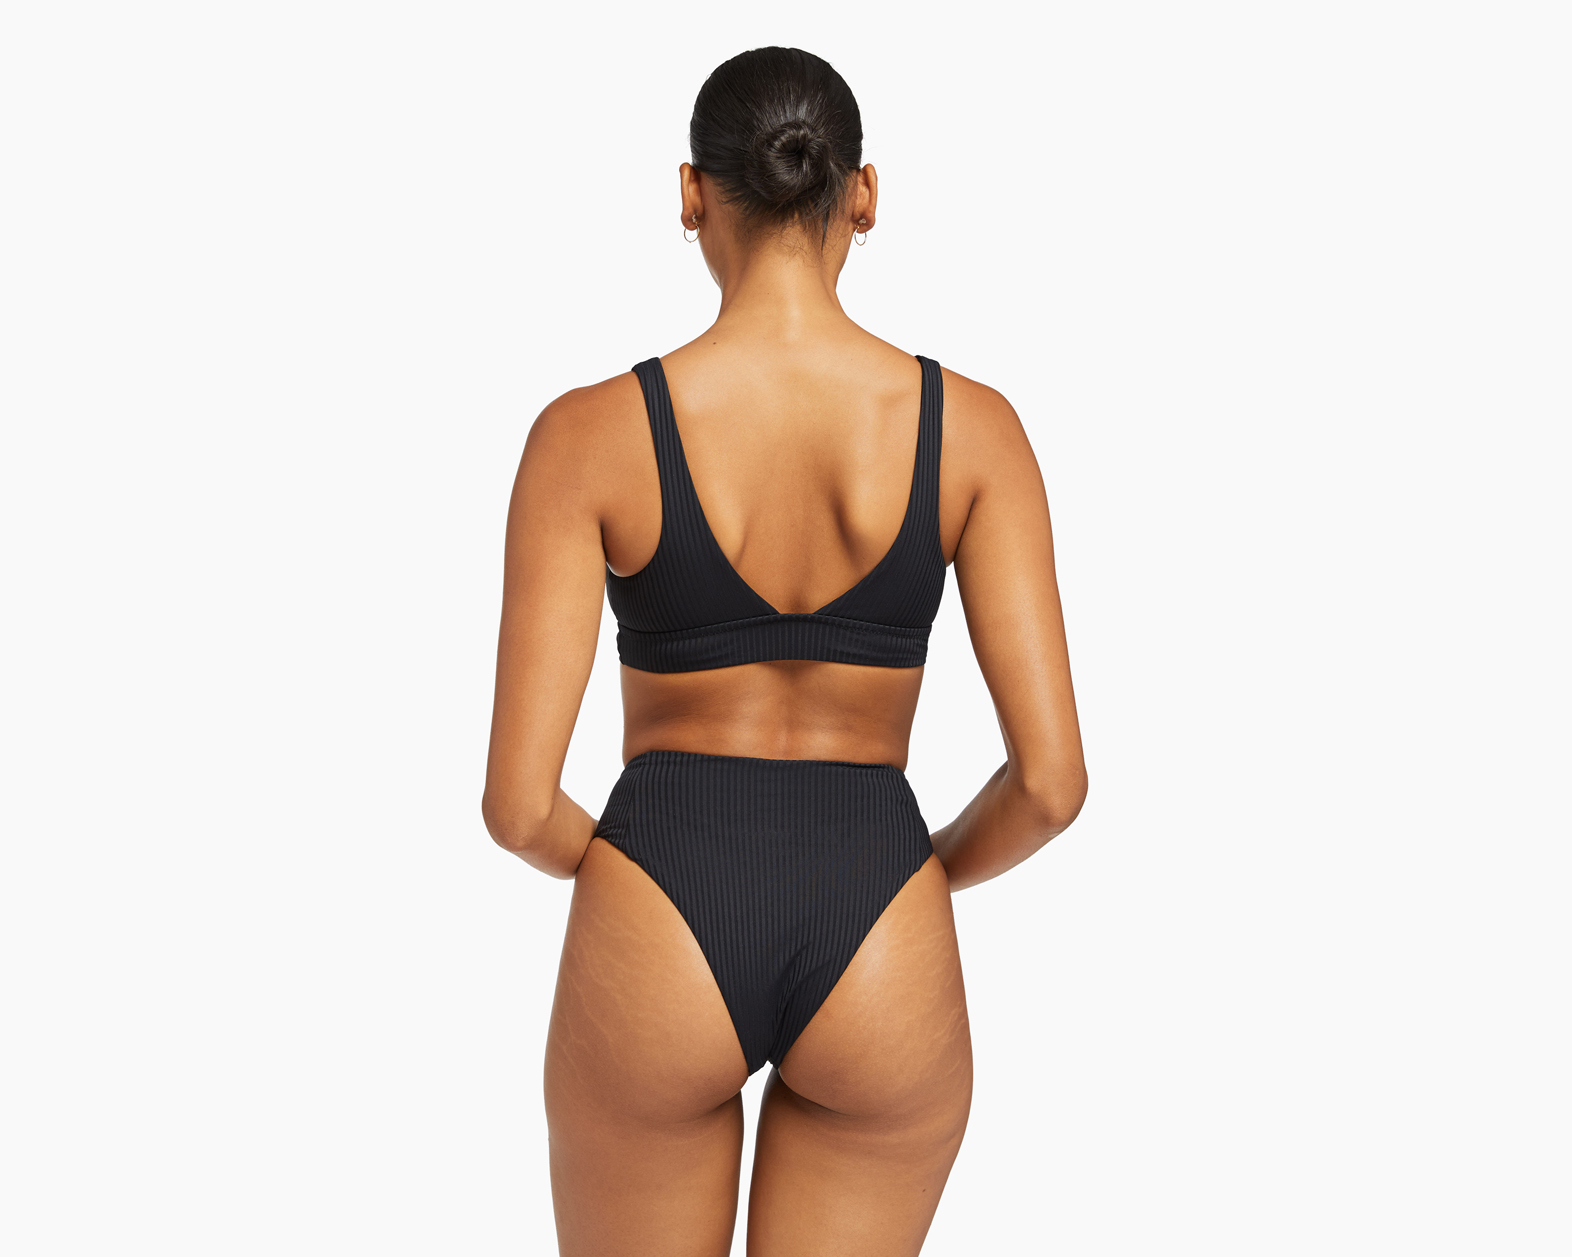 Vitamin A Sienna High-Waist Ribbed Bikini Bottom in Black 11124 Size S /6 